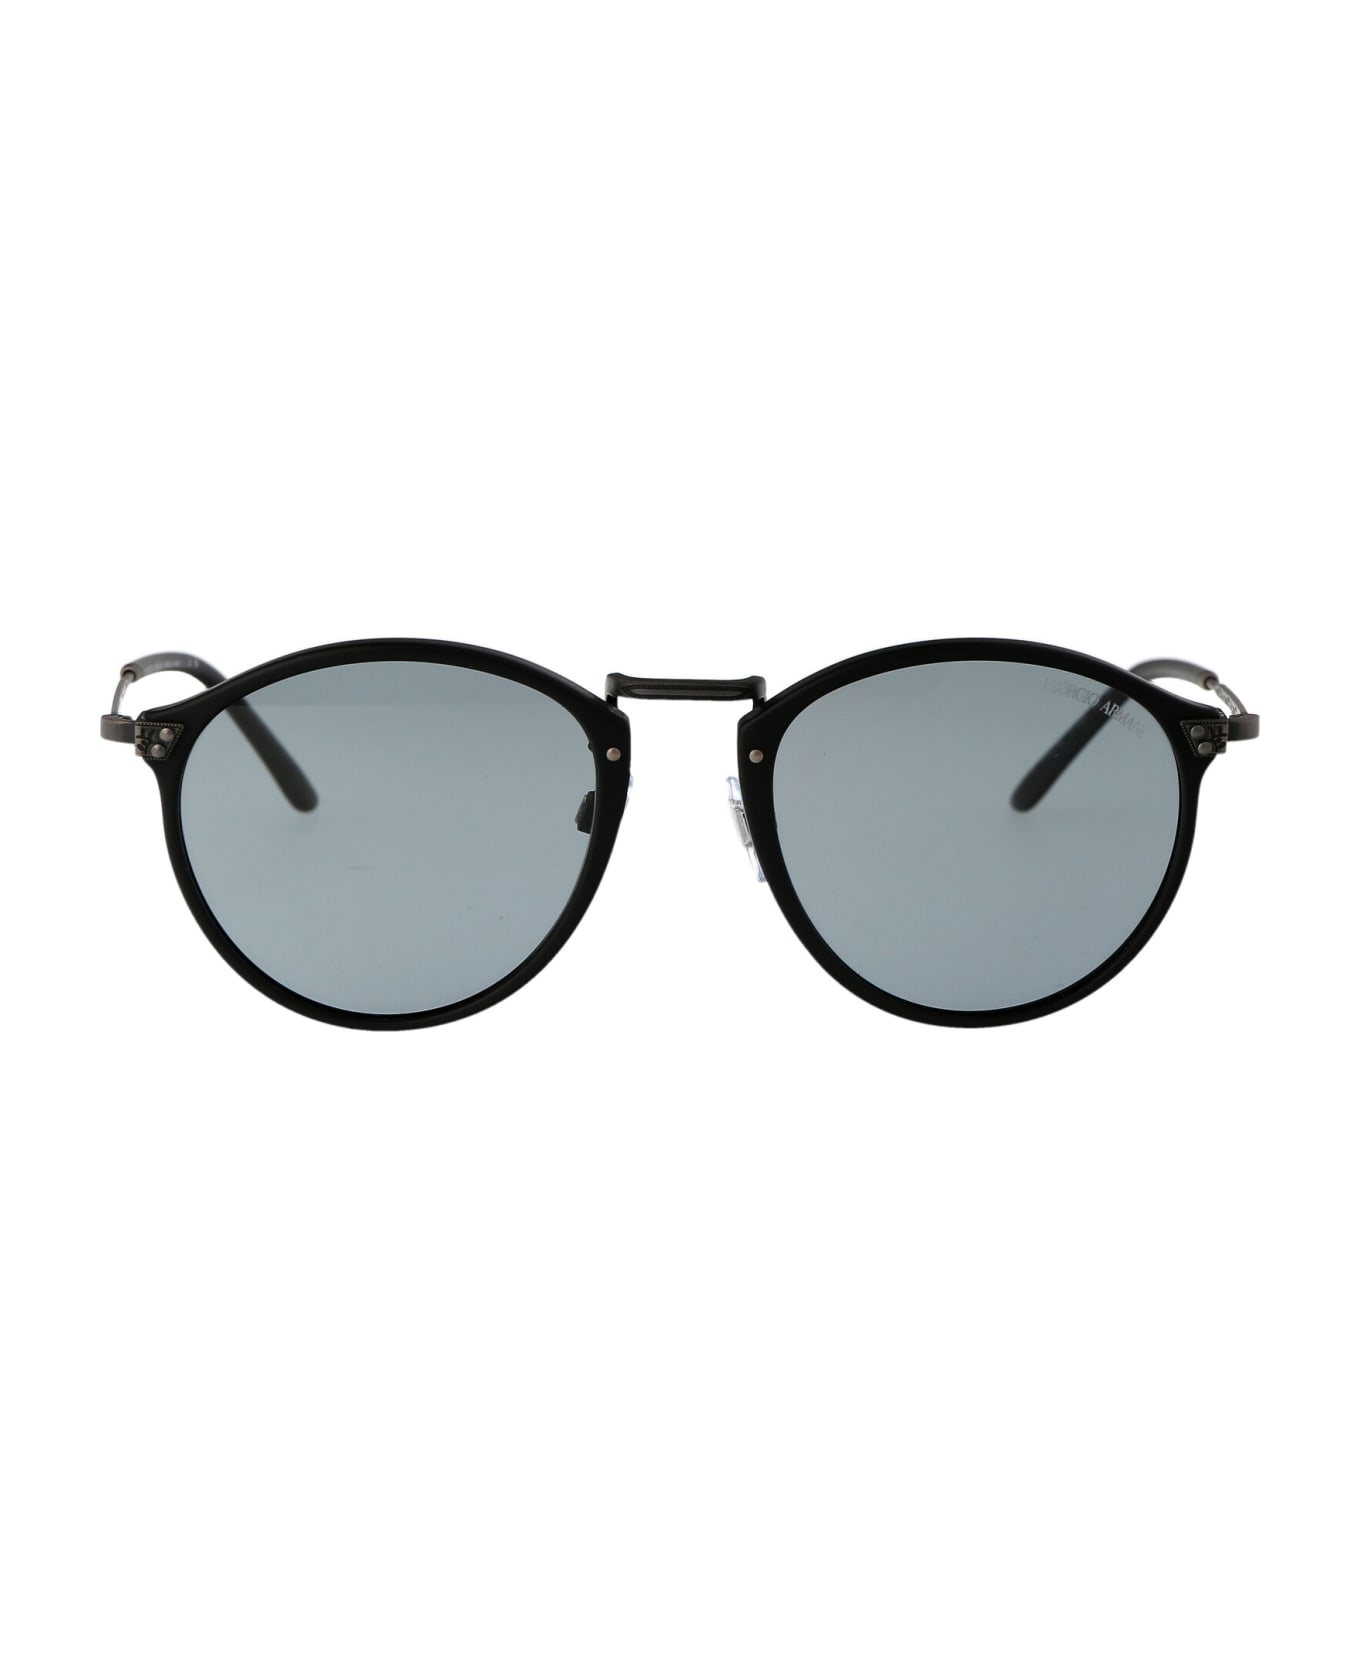 Giorgio Armani 0ar 318sm Sunglasses - 504256 Matte Black